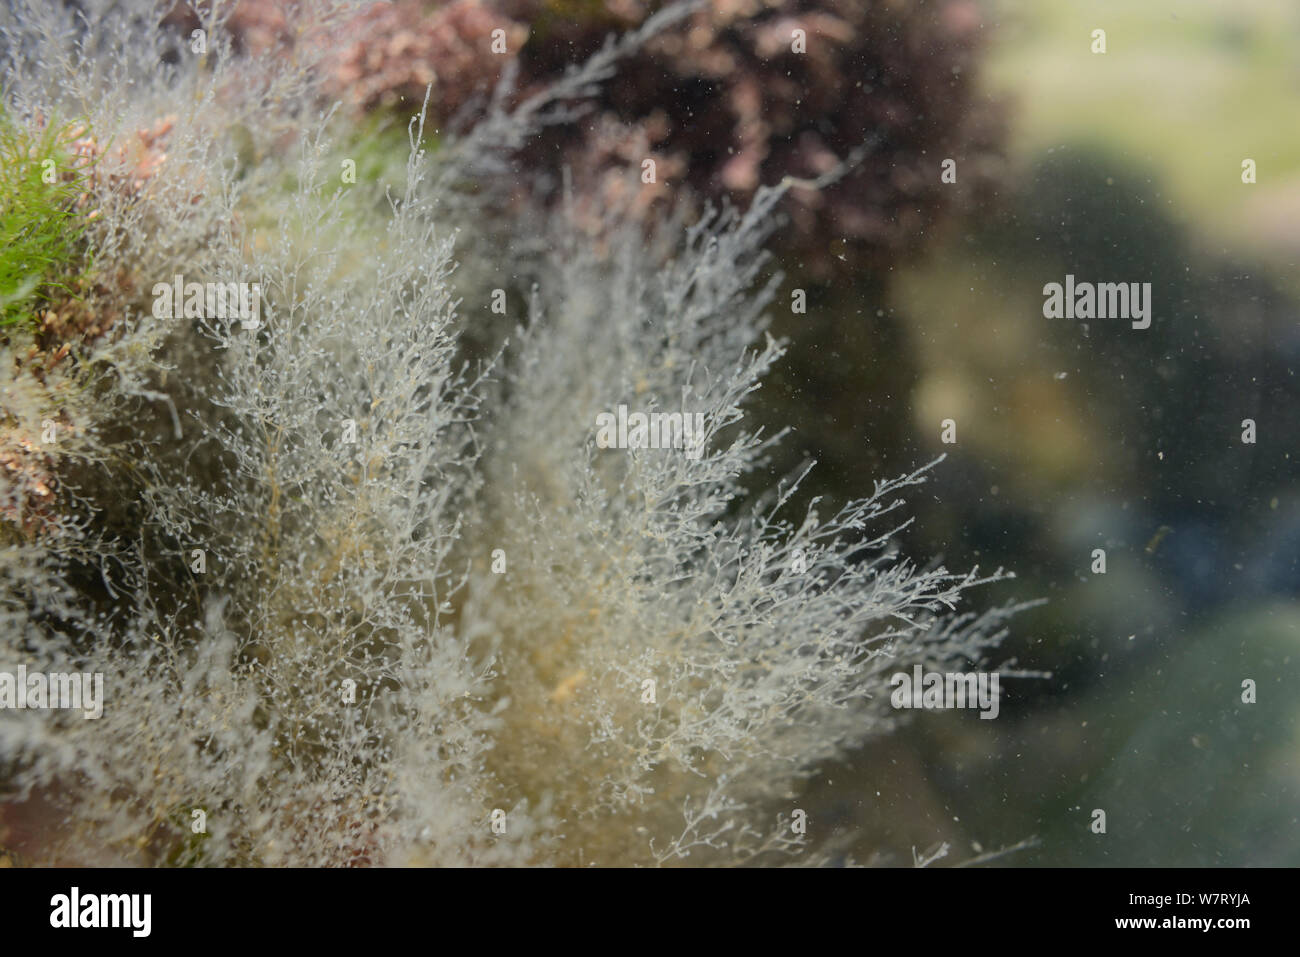 Colonies hydroïdes (Obelia dichotoma) attachés à des pierres dans un rockpool, Rhossili, la péninsule de Gower, au Pays de Galles, Royaume-Uni, juin. Banque D'Images